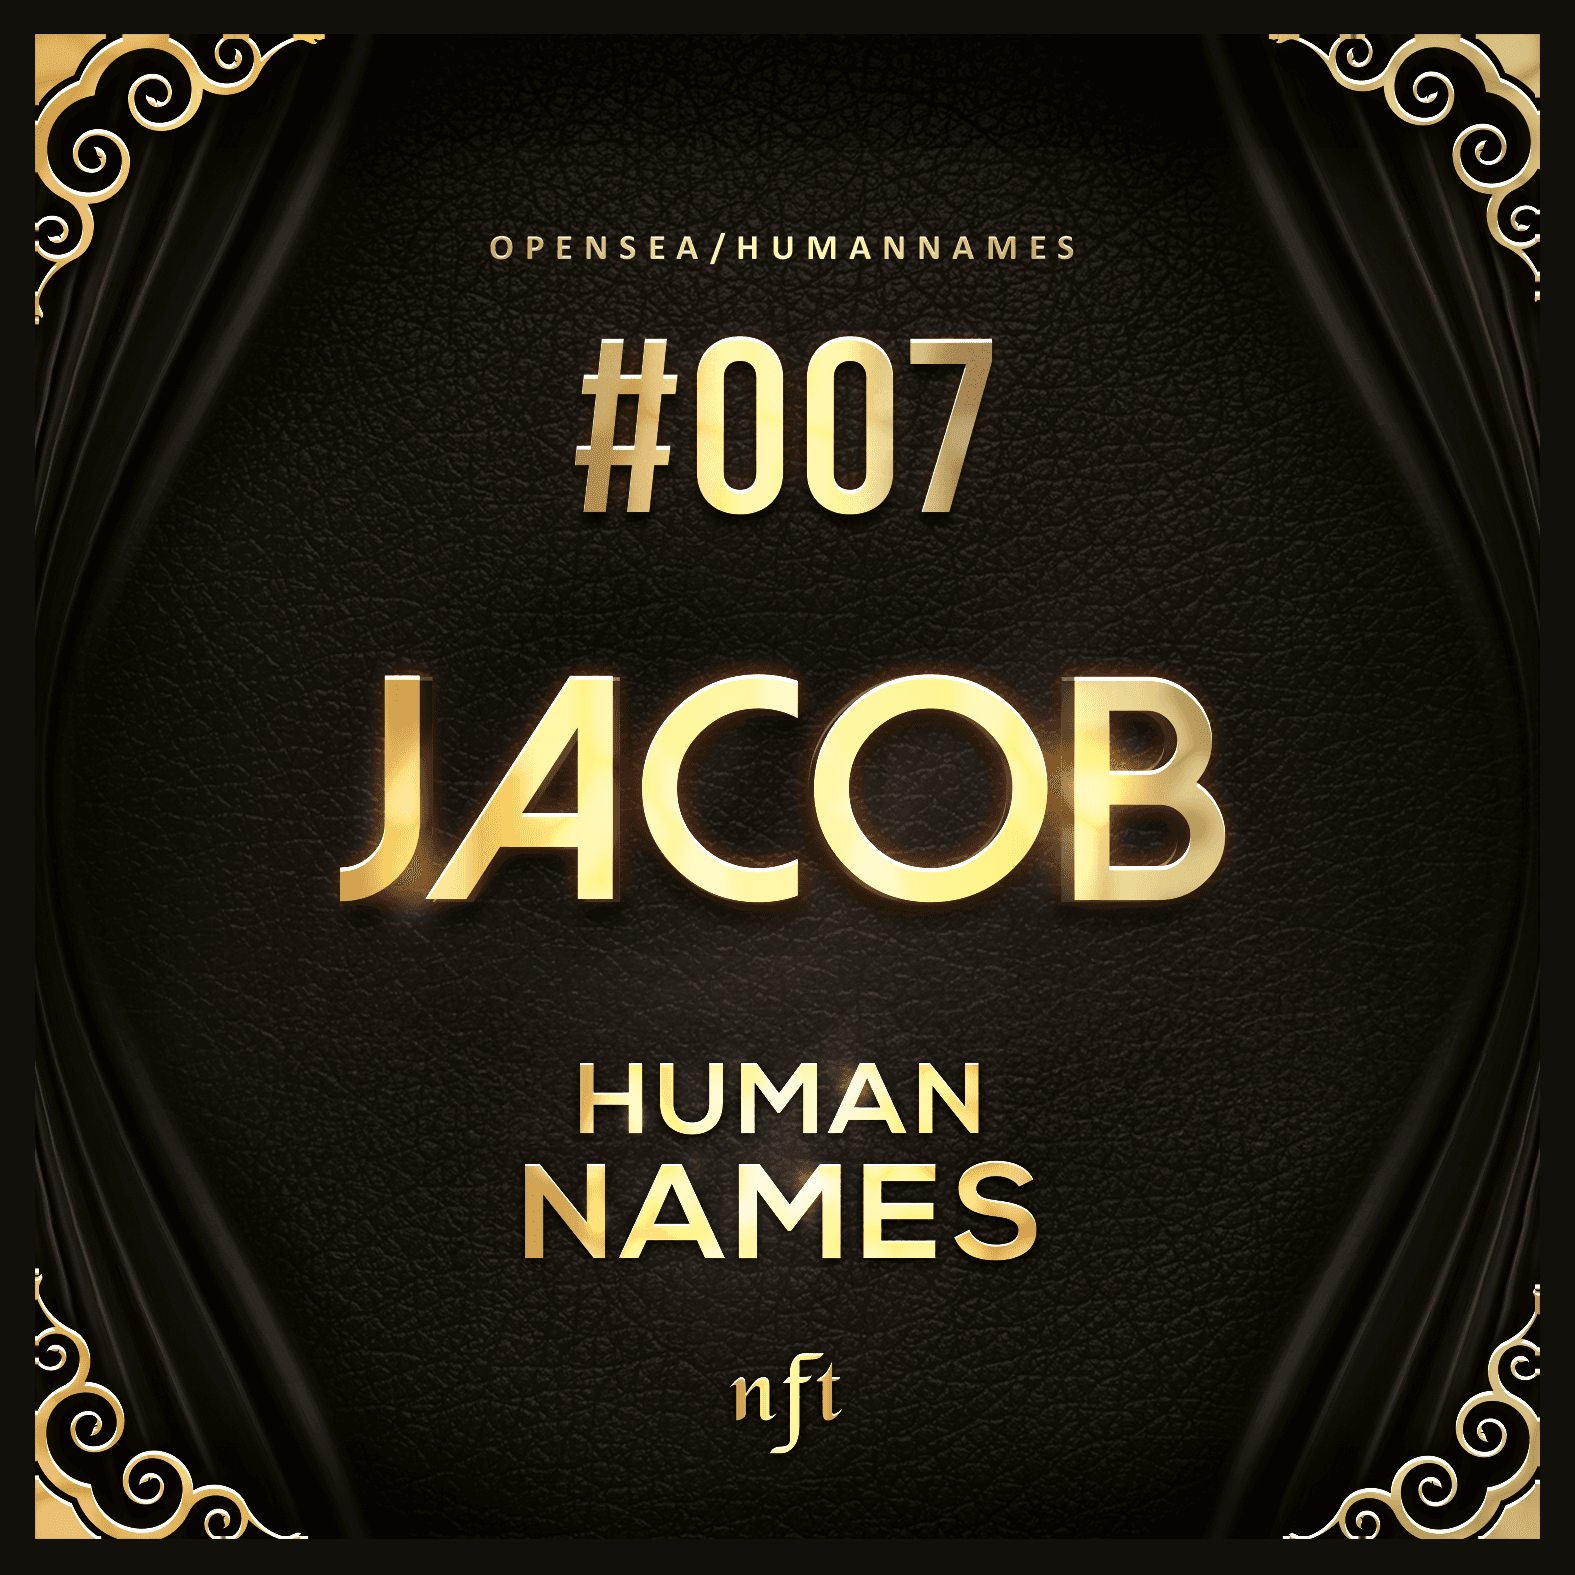 #007 Jacob - Human Names